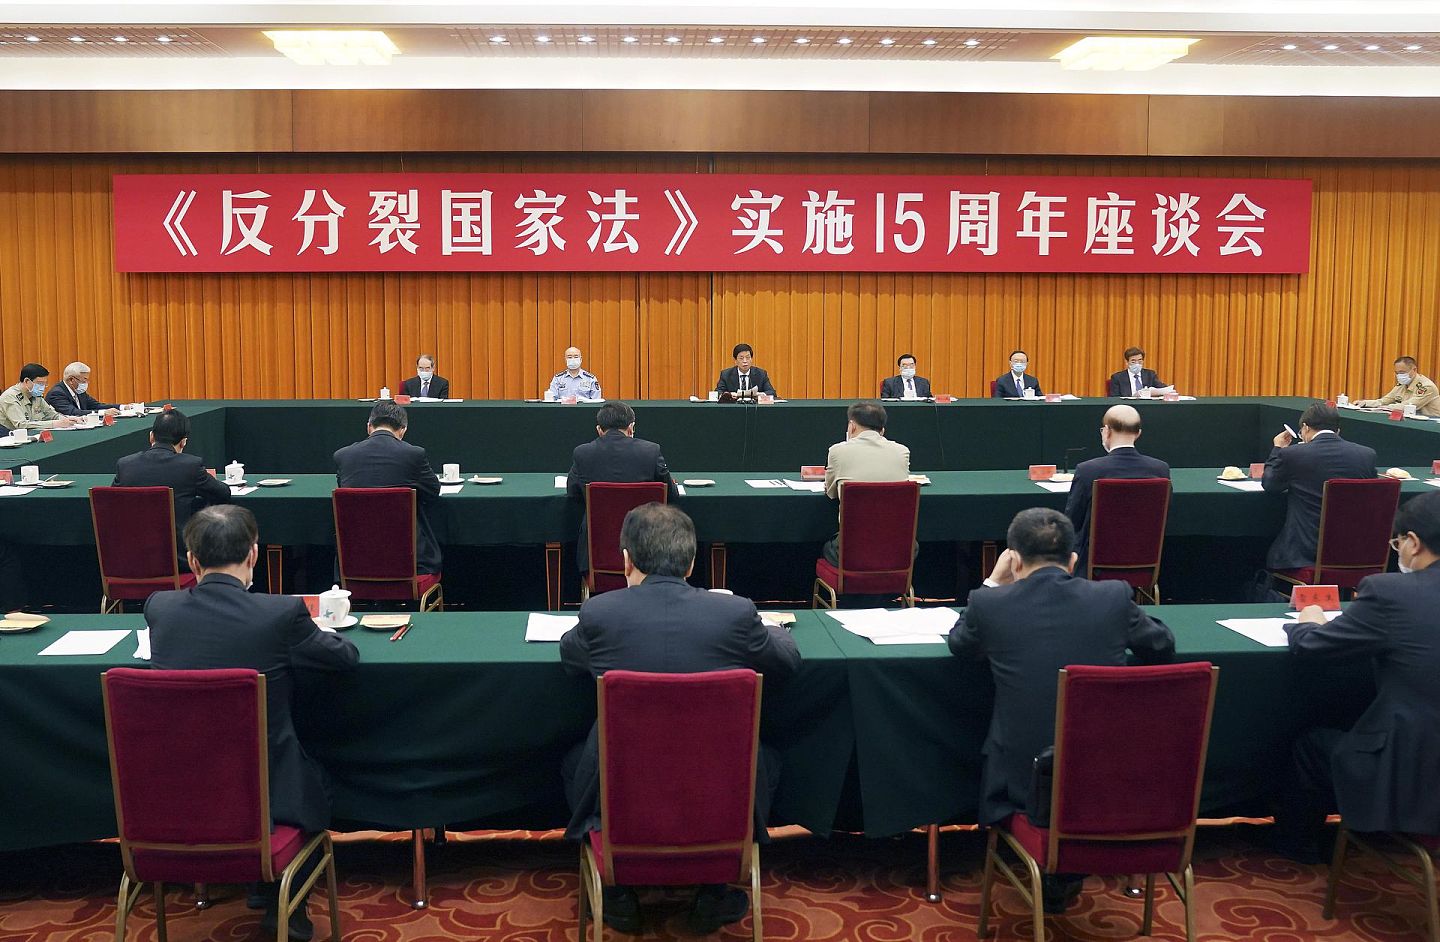 2020年5月29日，《反分裂国家法》实施15周年座谈会在北京人民大会堂举行。中共中央政治局常委、全国人大常委会委员长栗战书在会上发表讲话。（新华社）